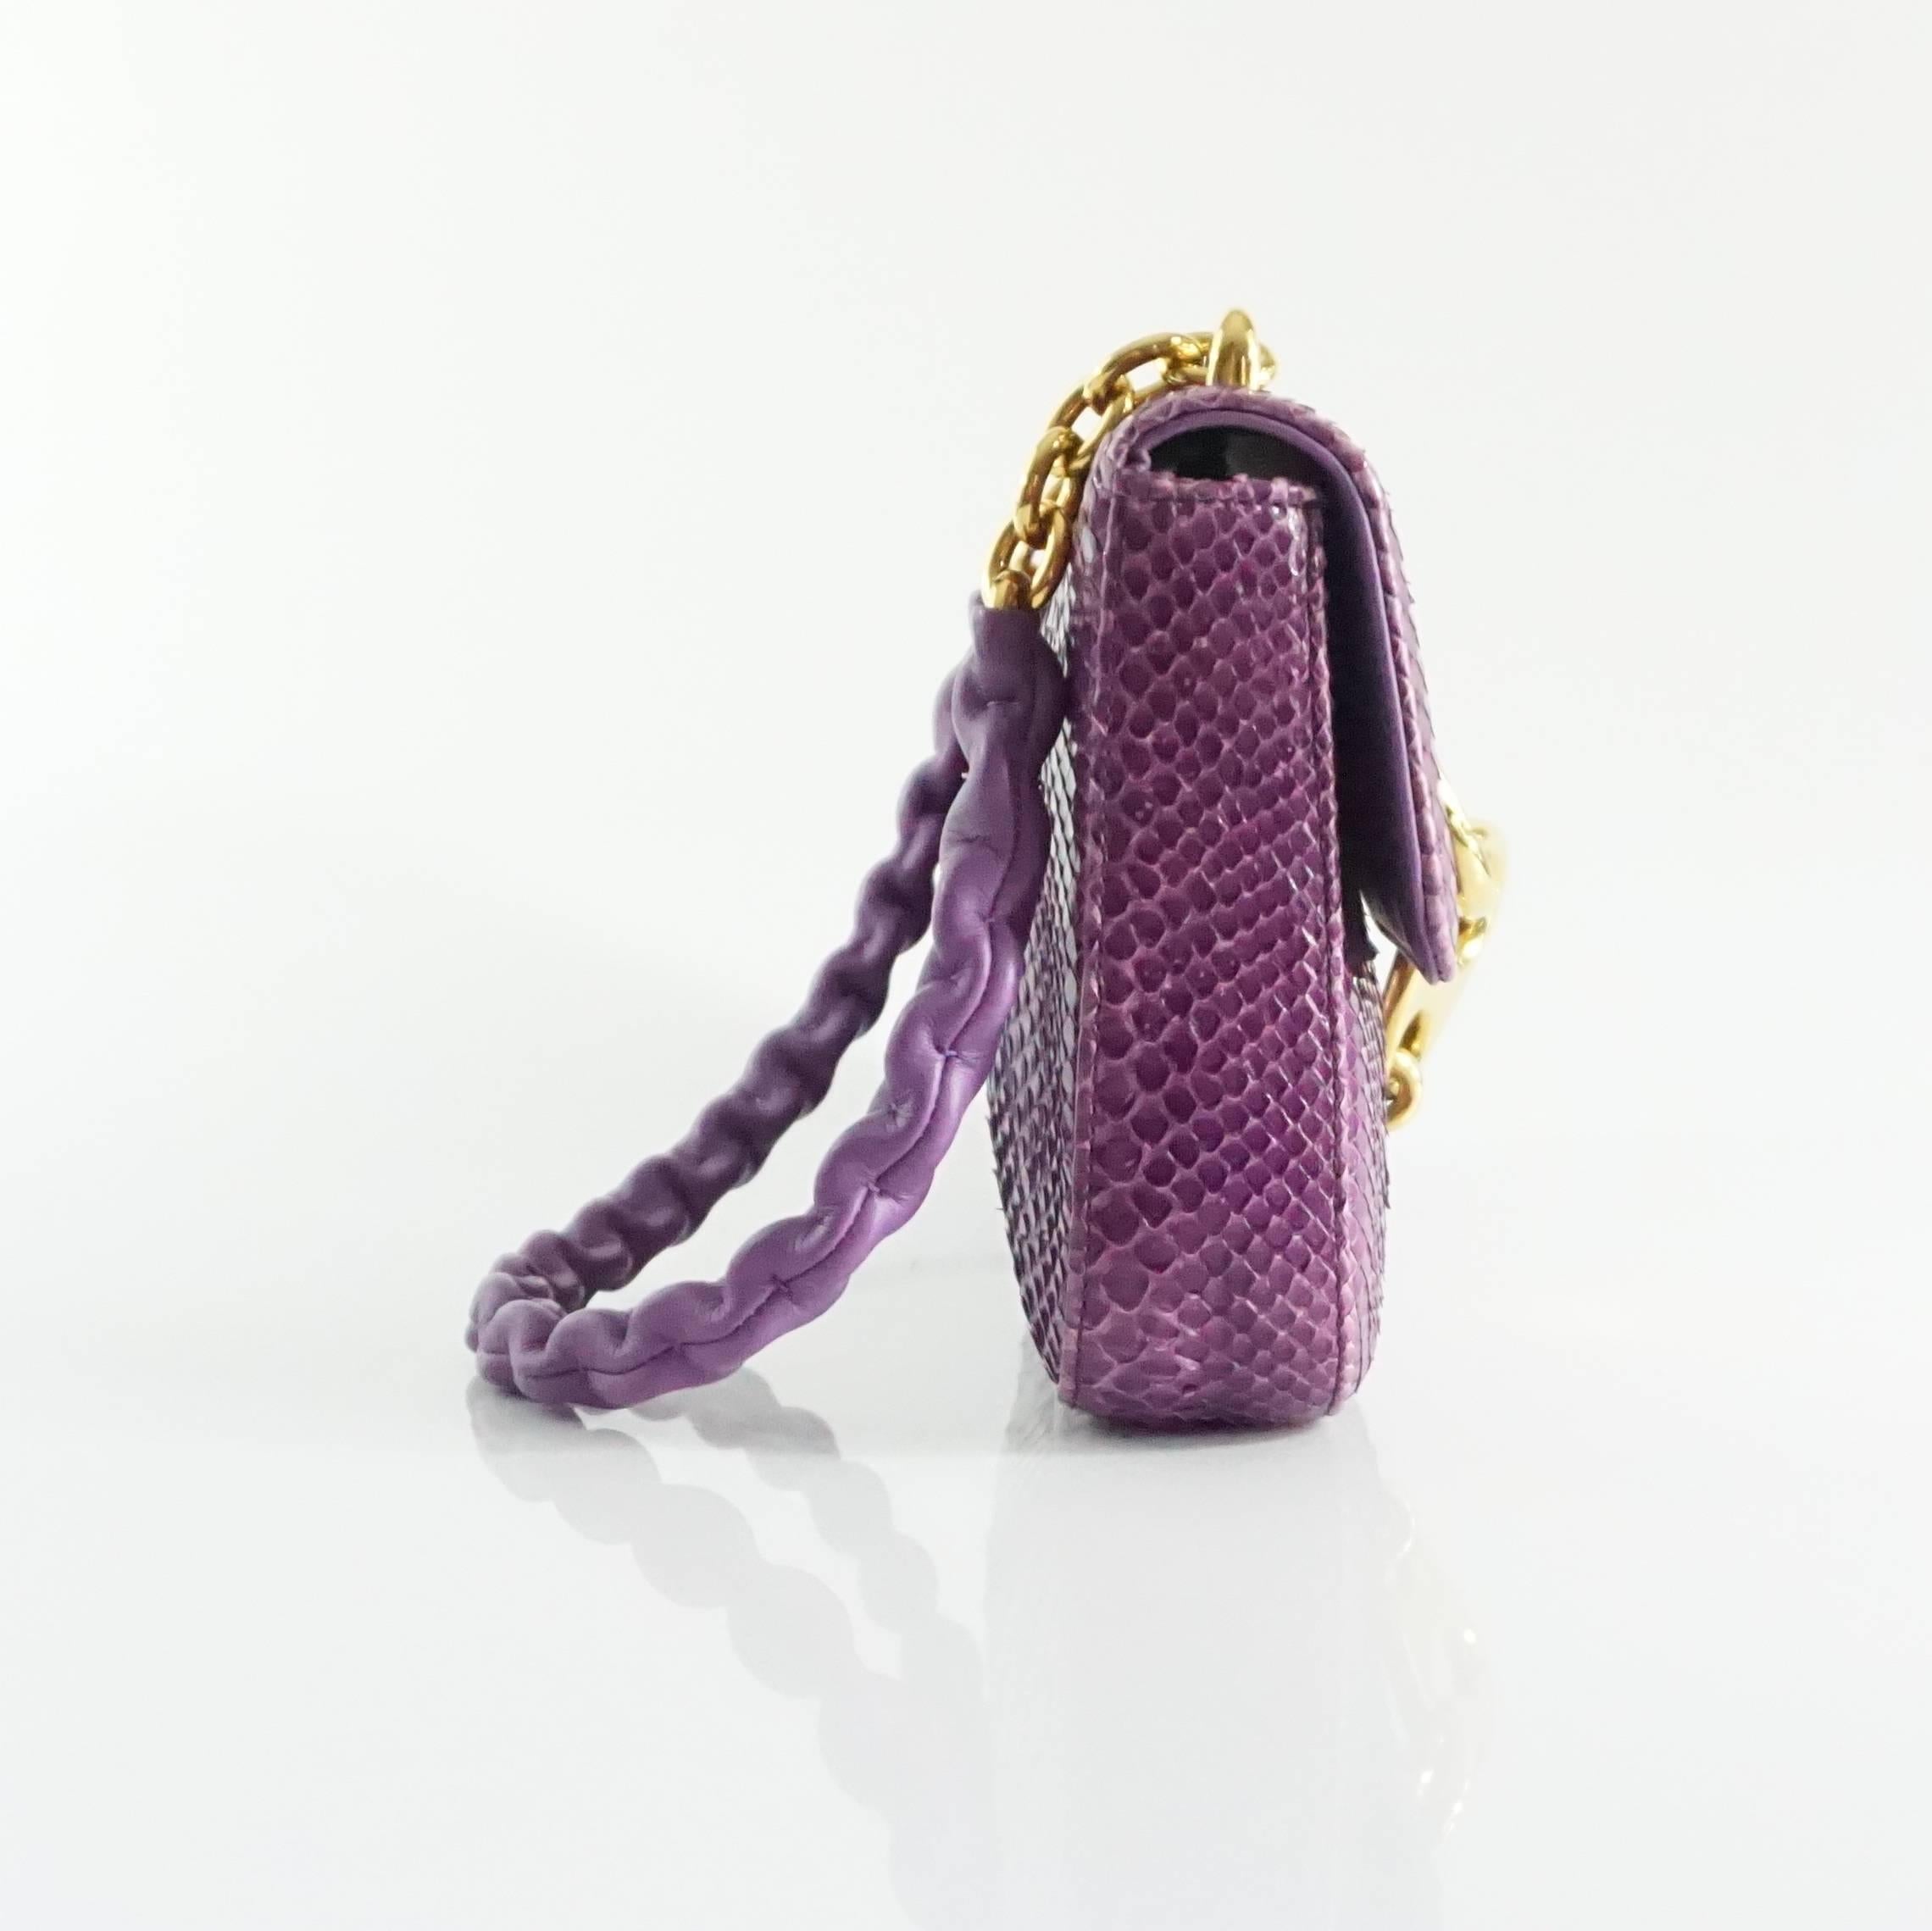 Diese lila Python-Tasche von Tom Ford hat einen großen Gliederverschluss und einen goldenen Kettenriemen mit Lederüberzug. Die Tasche hat einen Überschlag mit lila Lederfutter und ein Reißverschlussfach. Die Tasche ist in ausgezeichnetem Zustand mit